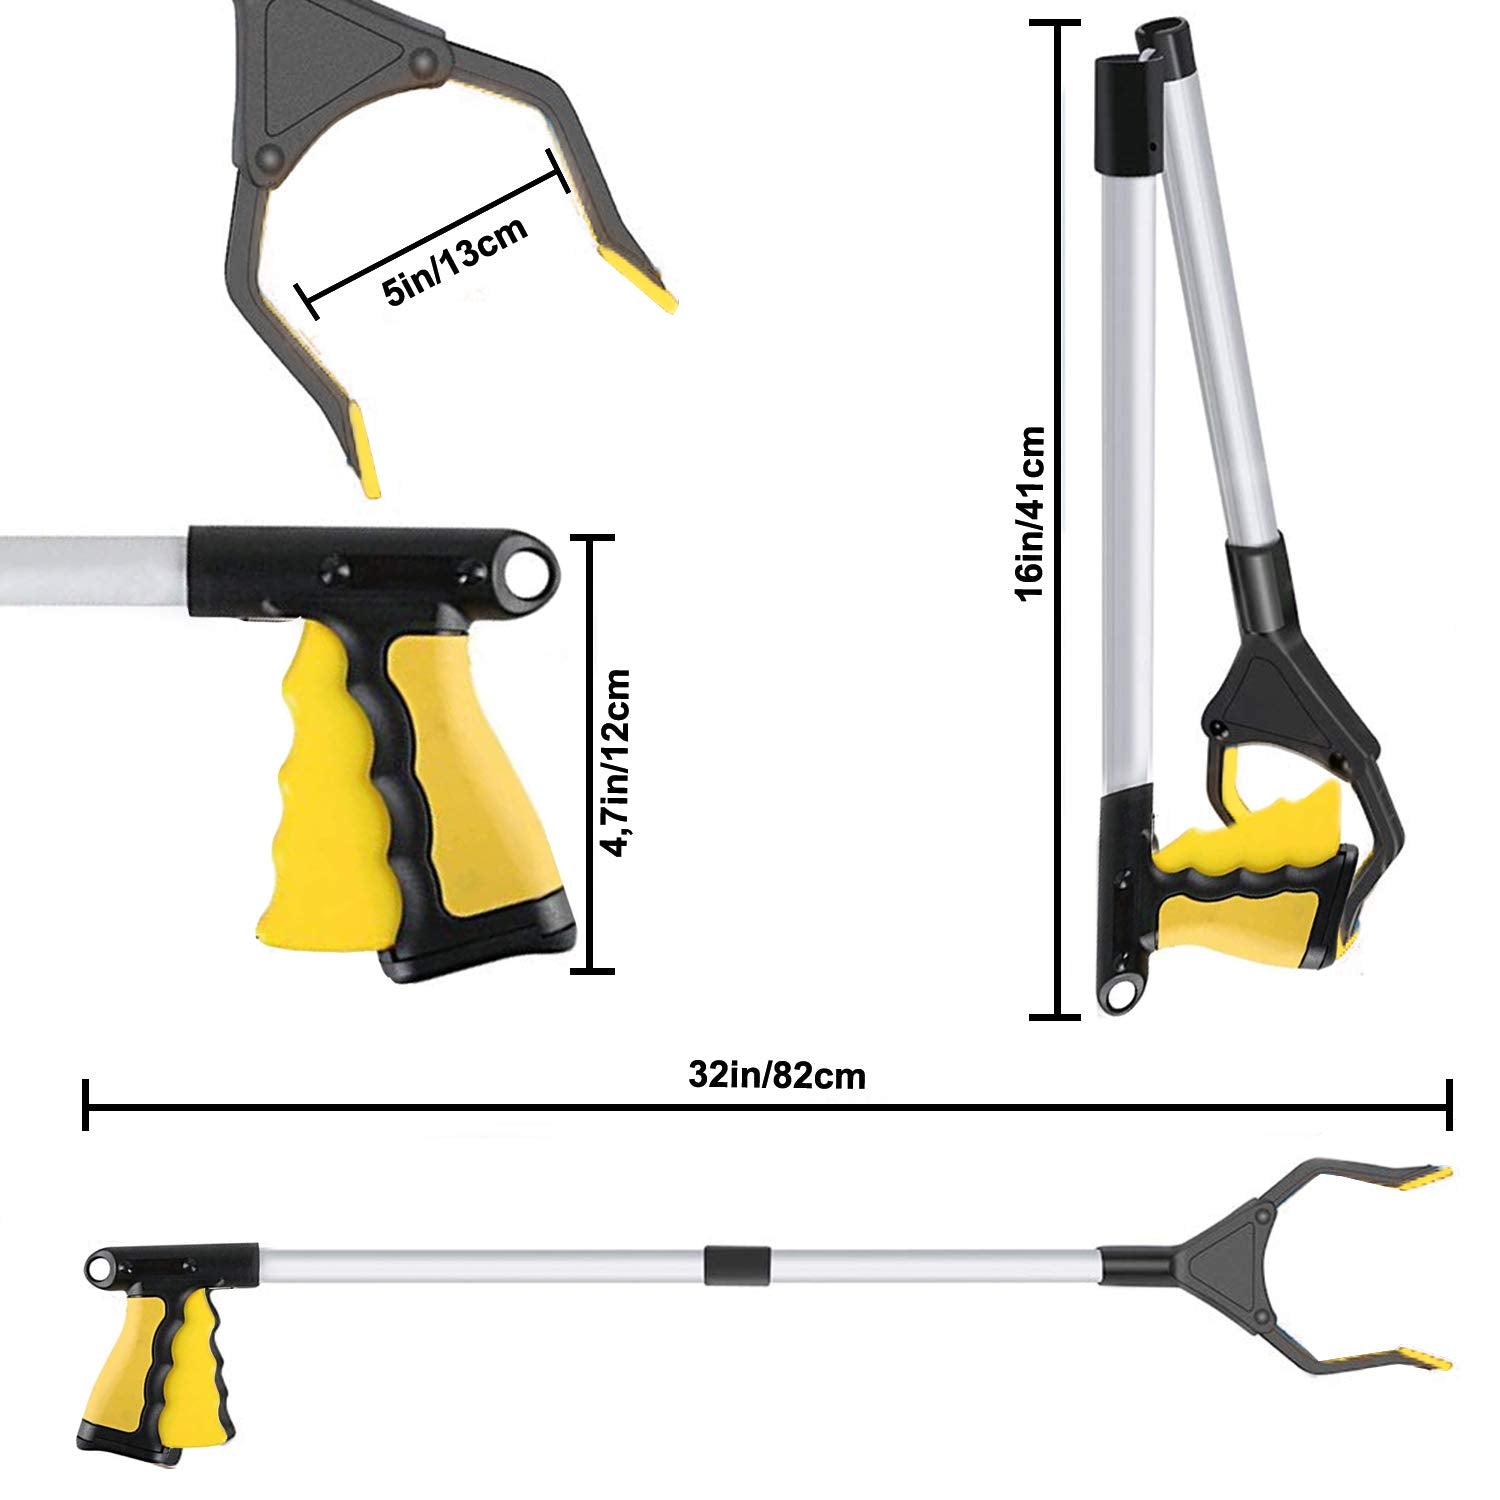 Foldable Litter Picker - Multi-Functional & Versatile Long Reach Grabber Tool